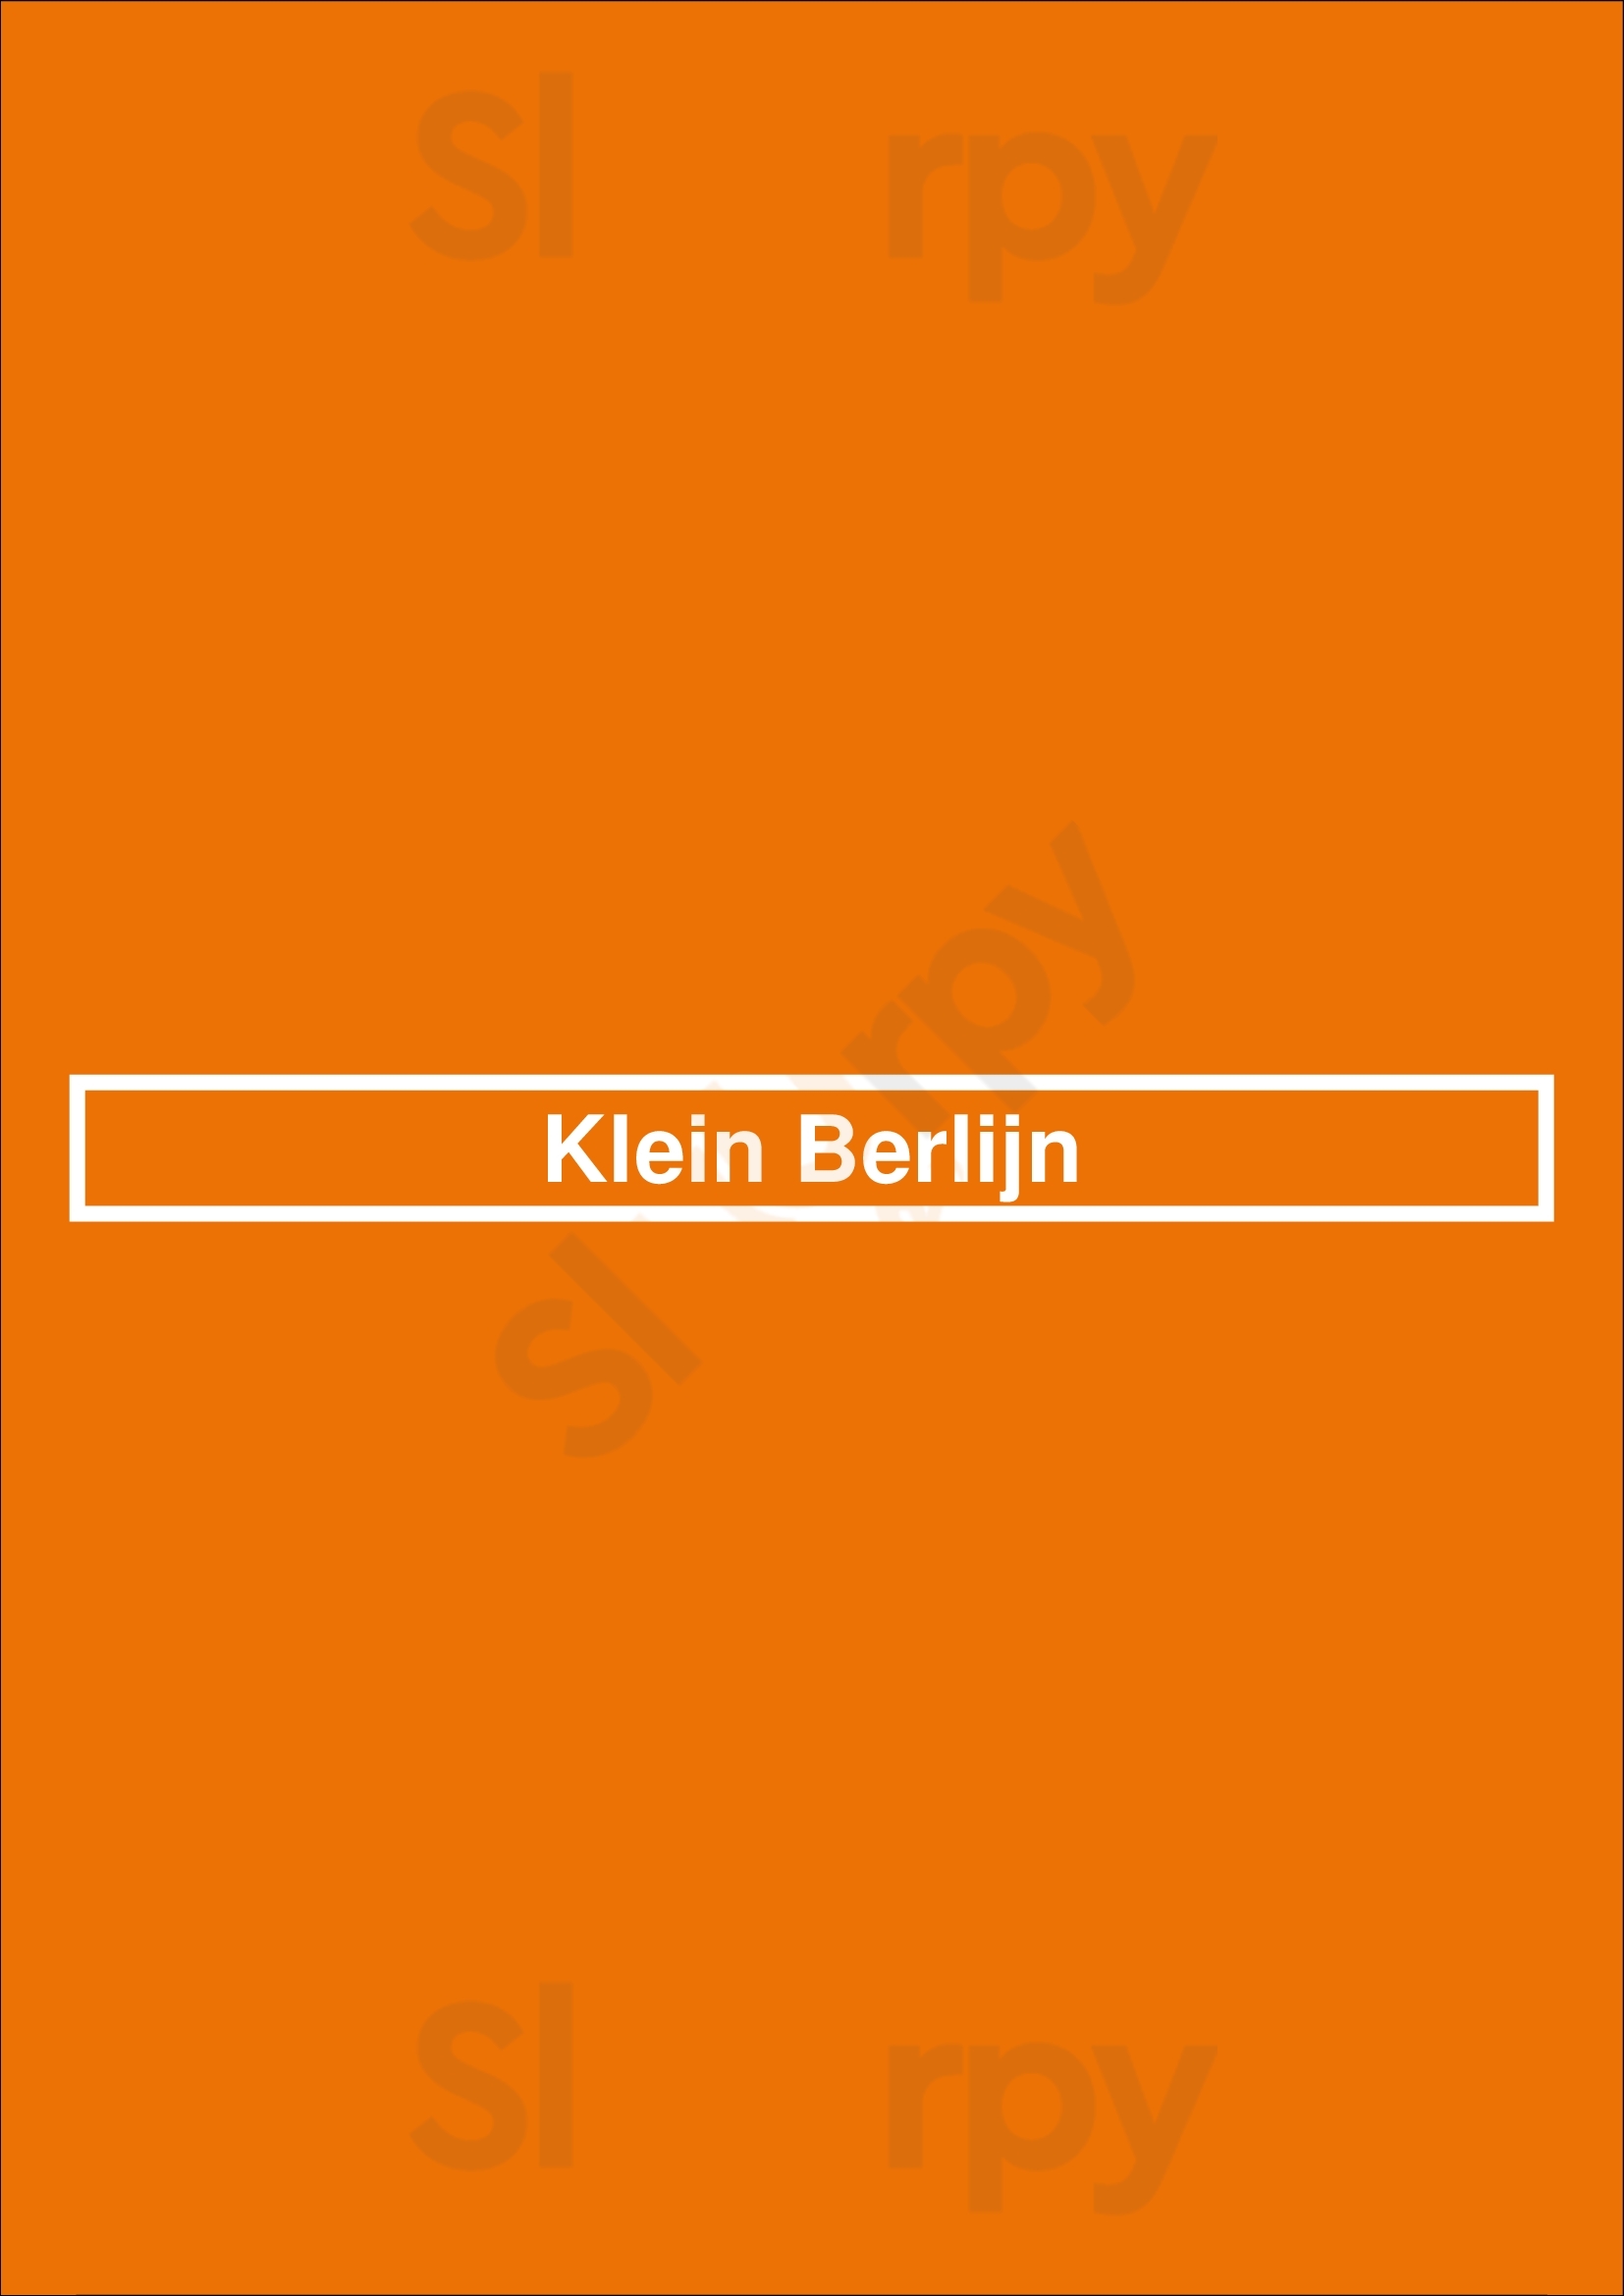 Klein Berlijn Apeldoorn Menu - 1